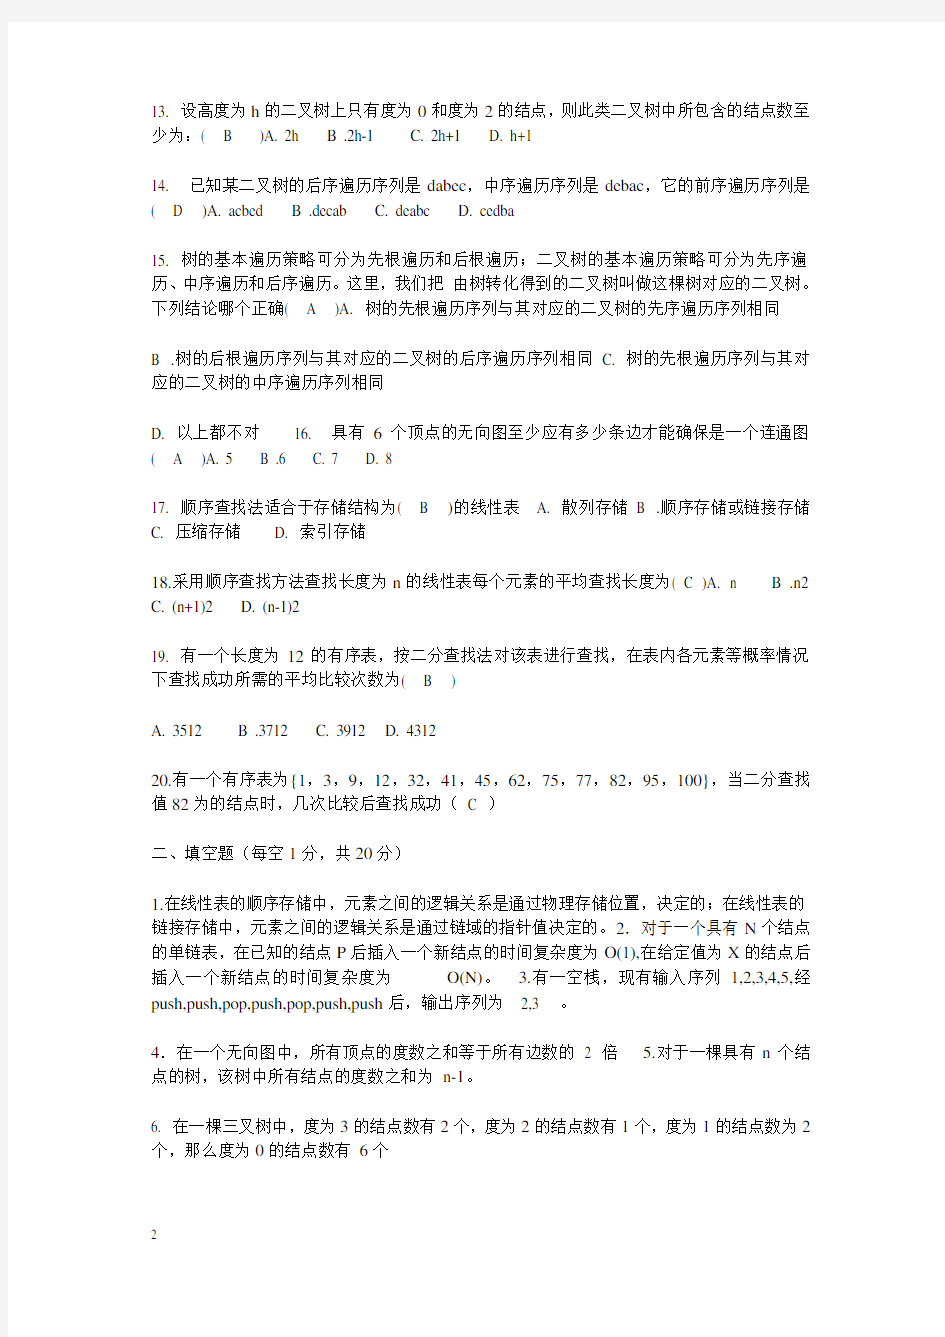 武汉大学数据结构考试试题(附答案)